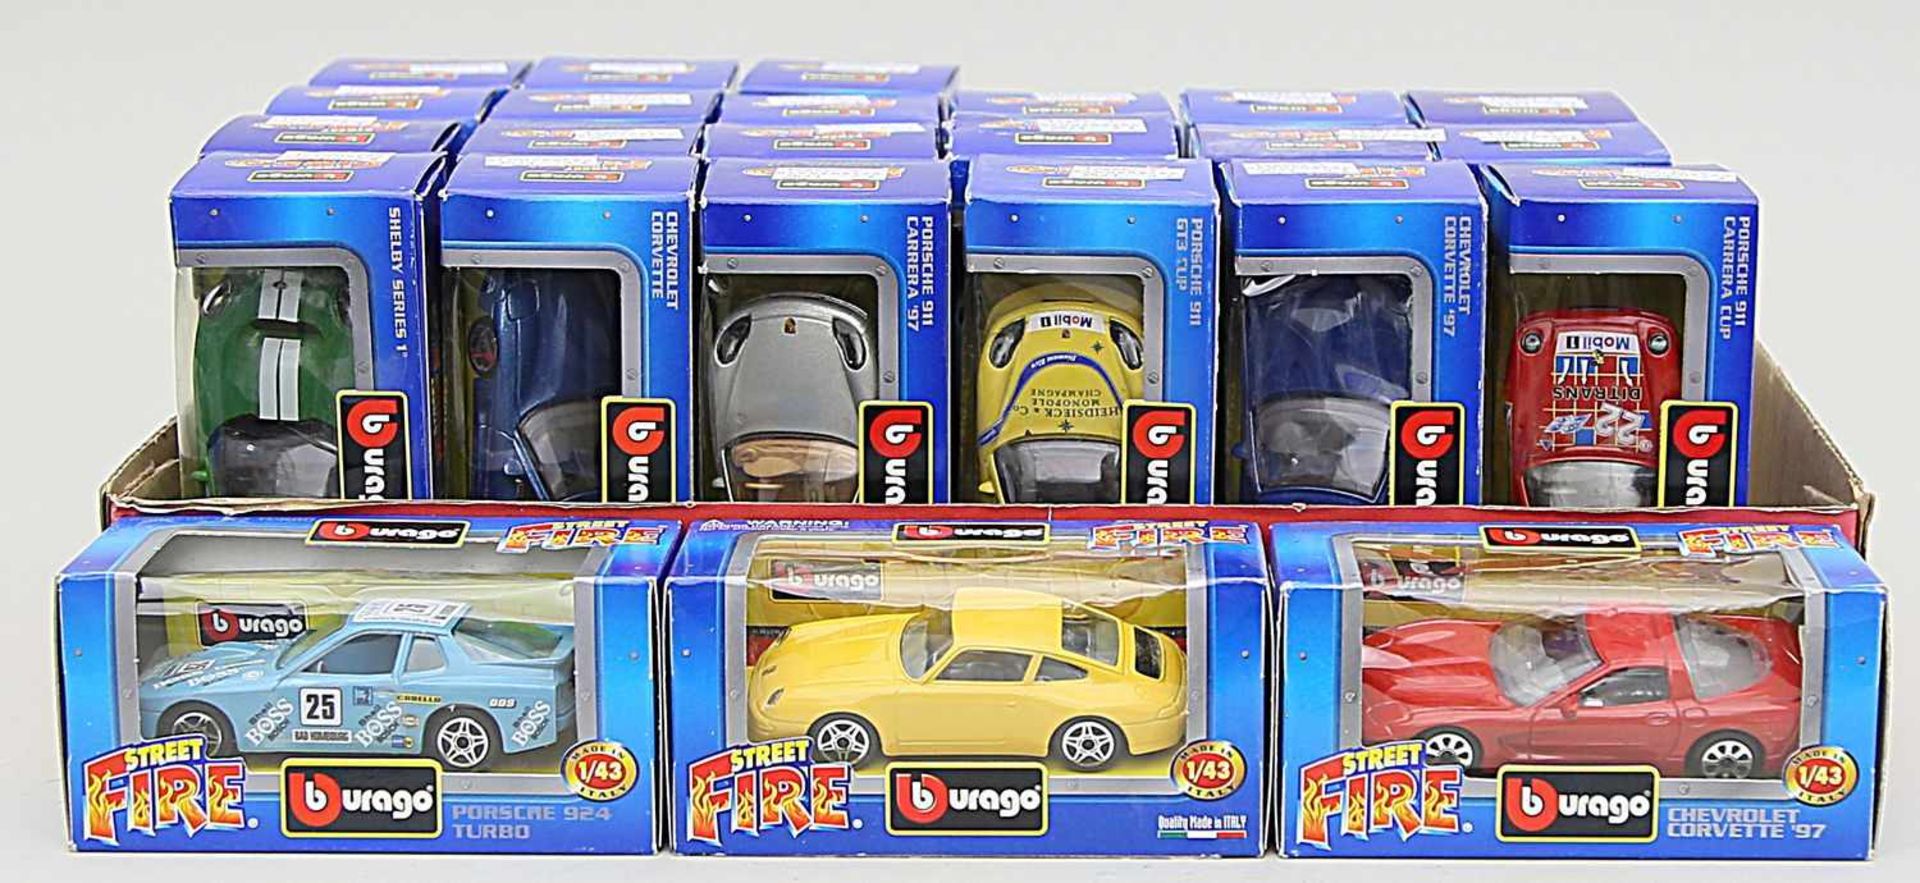 24 Spielzeugautos, Burago, 1:43.Verschiedene Modelle aus der "Street Fire Collection". Je in